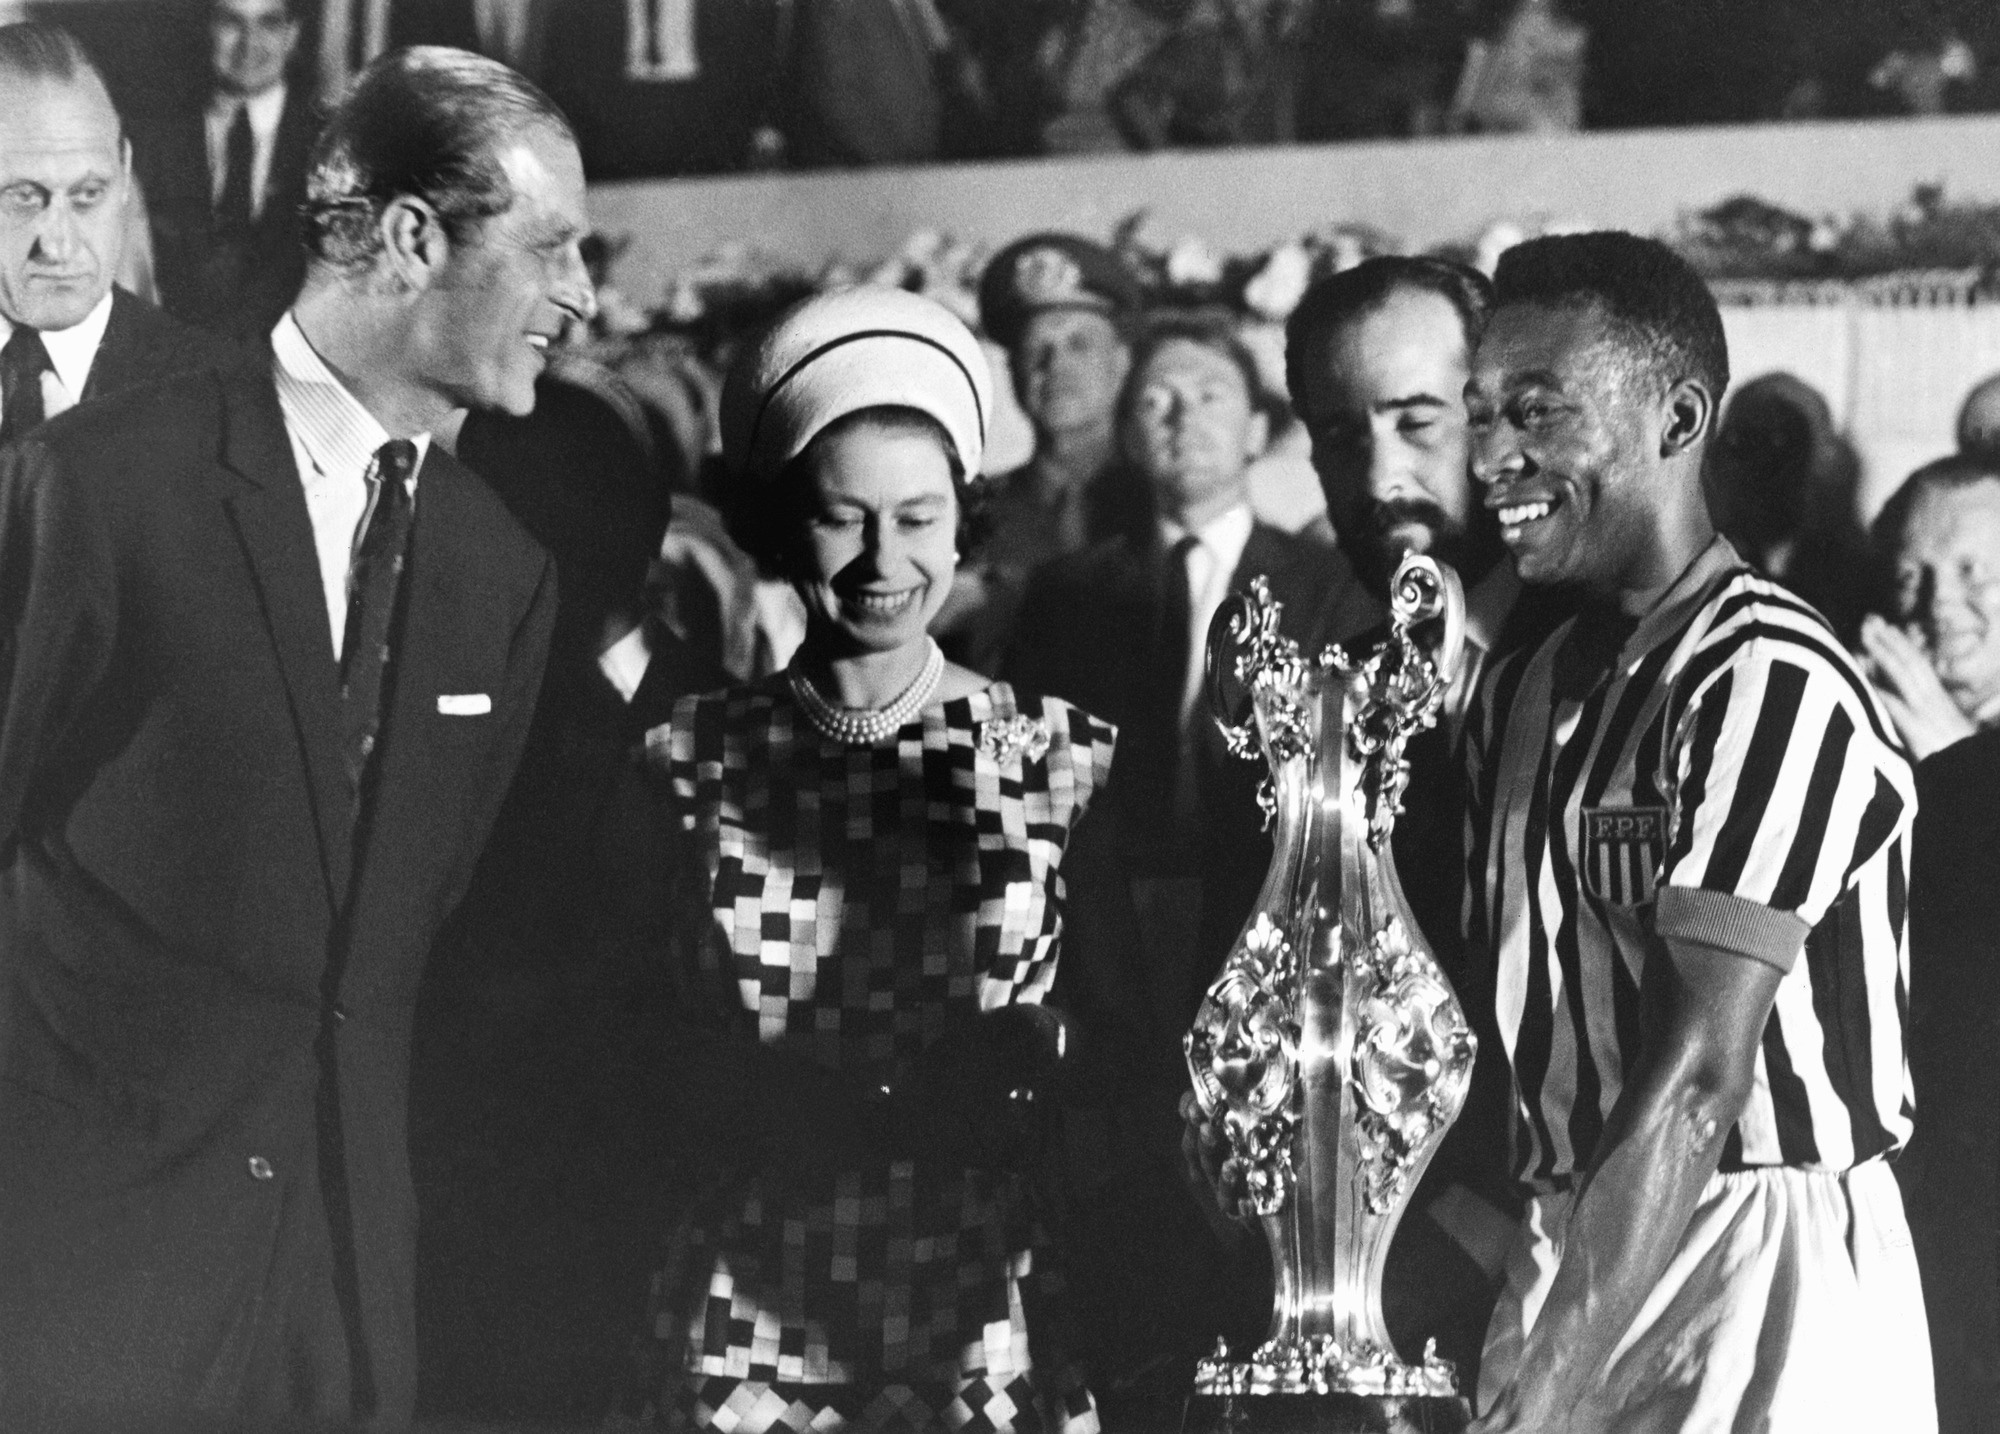 Nữ hoàng Anh Elizabeth II cùng với Hoàng tử Philip trao cúp cho Pele, tại một sân vận động ở Rio de Janeiro trong chuyến công du Nam Mỹ năm 1968. [Ảnh; AP]